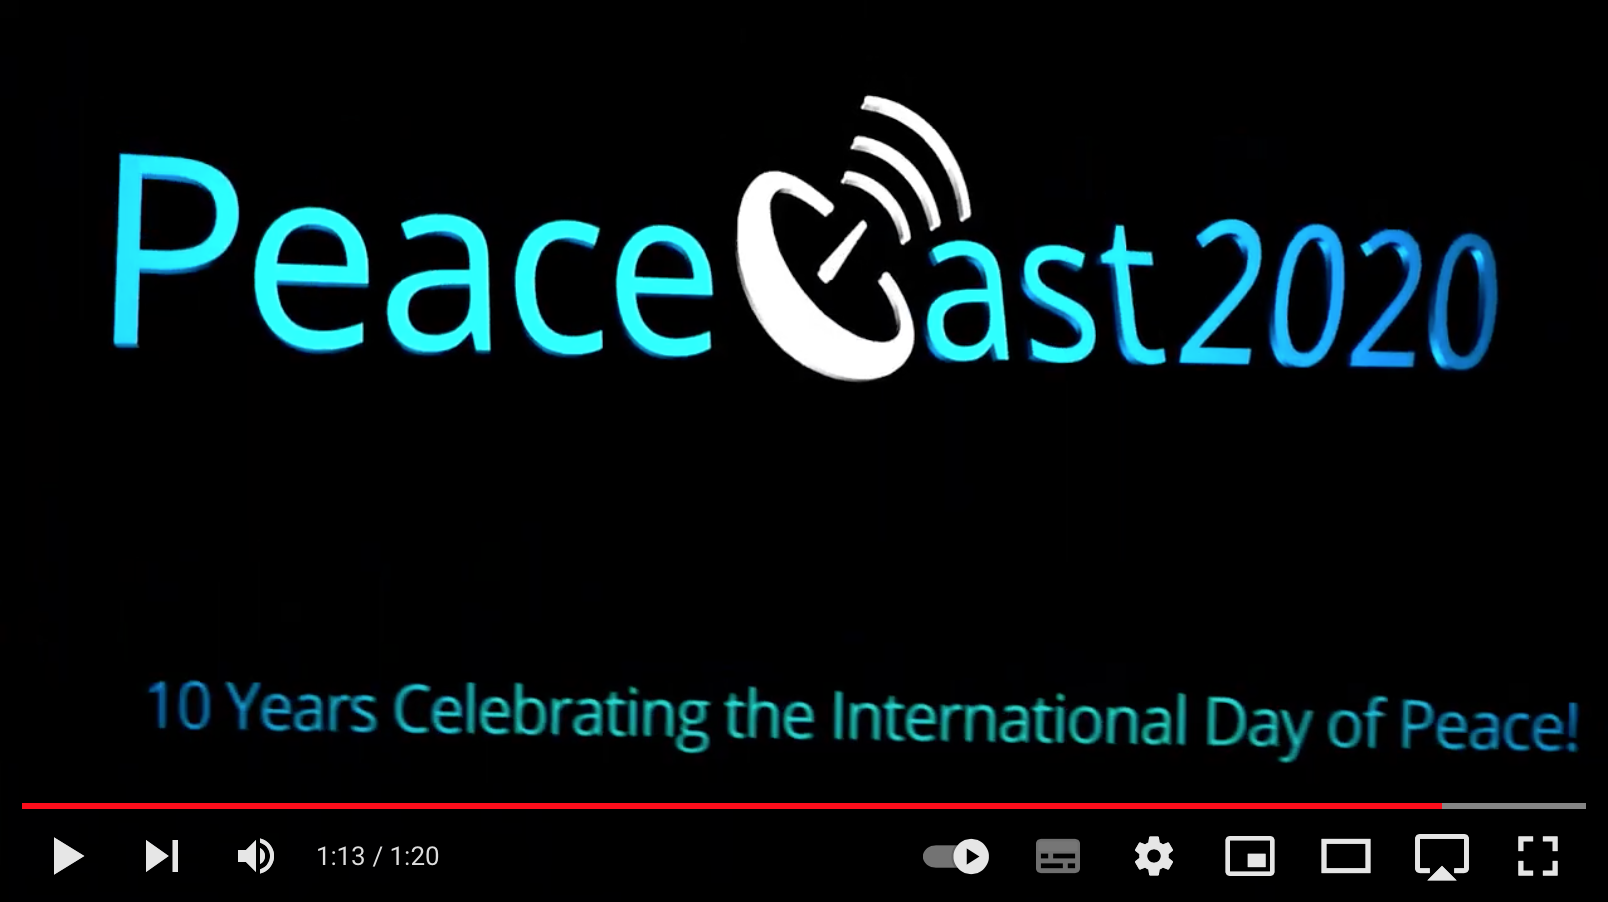 PeaceCast TV 2020